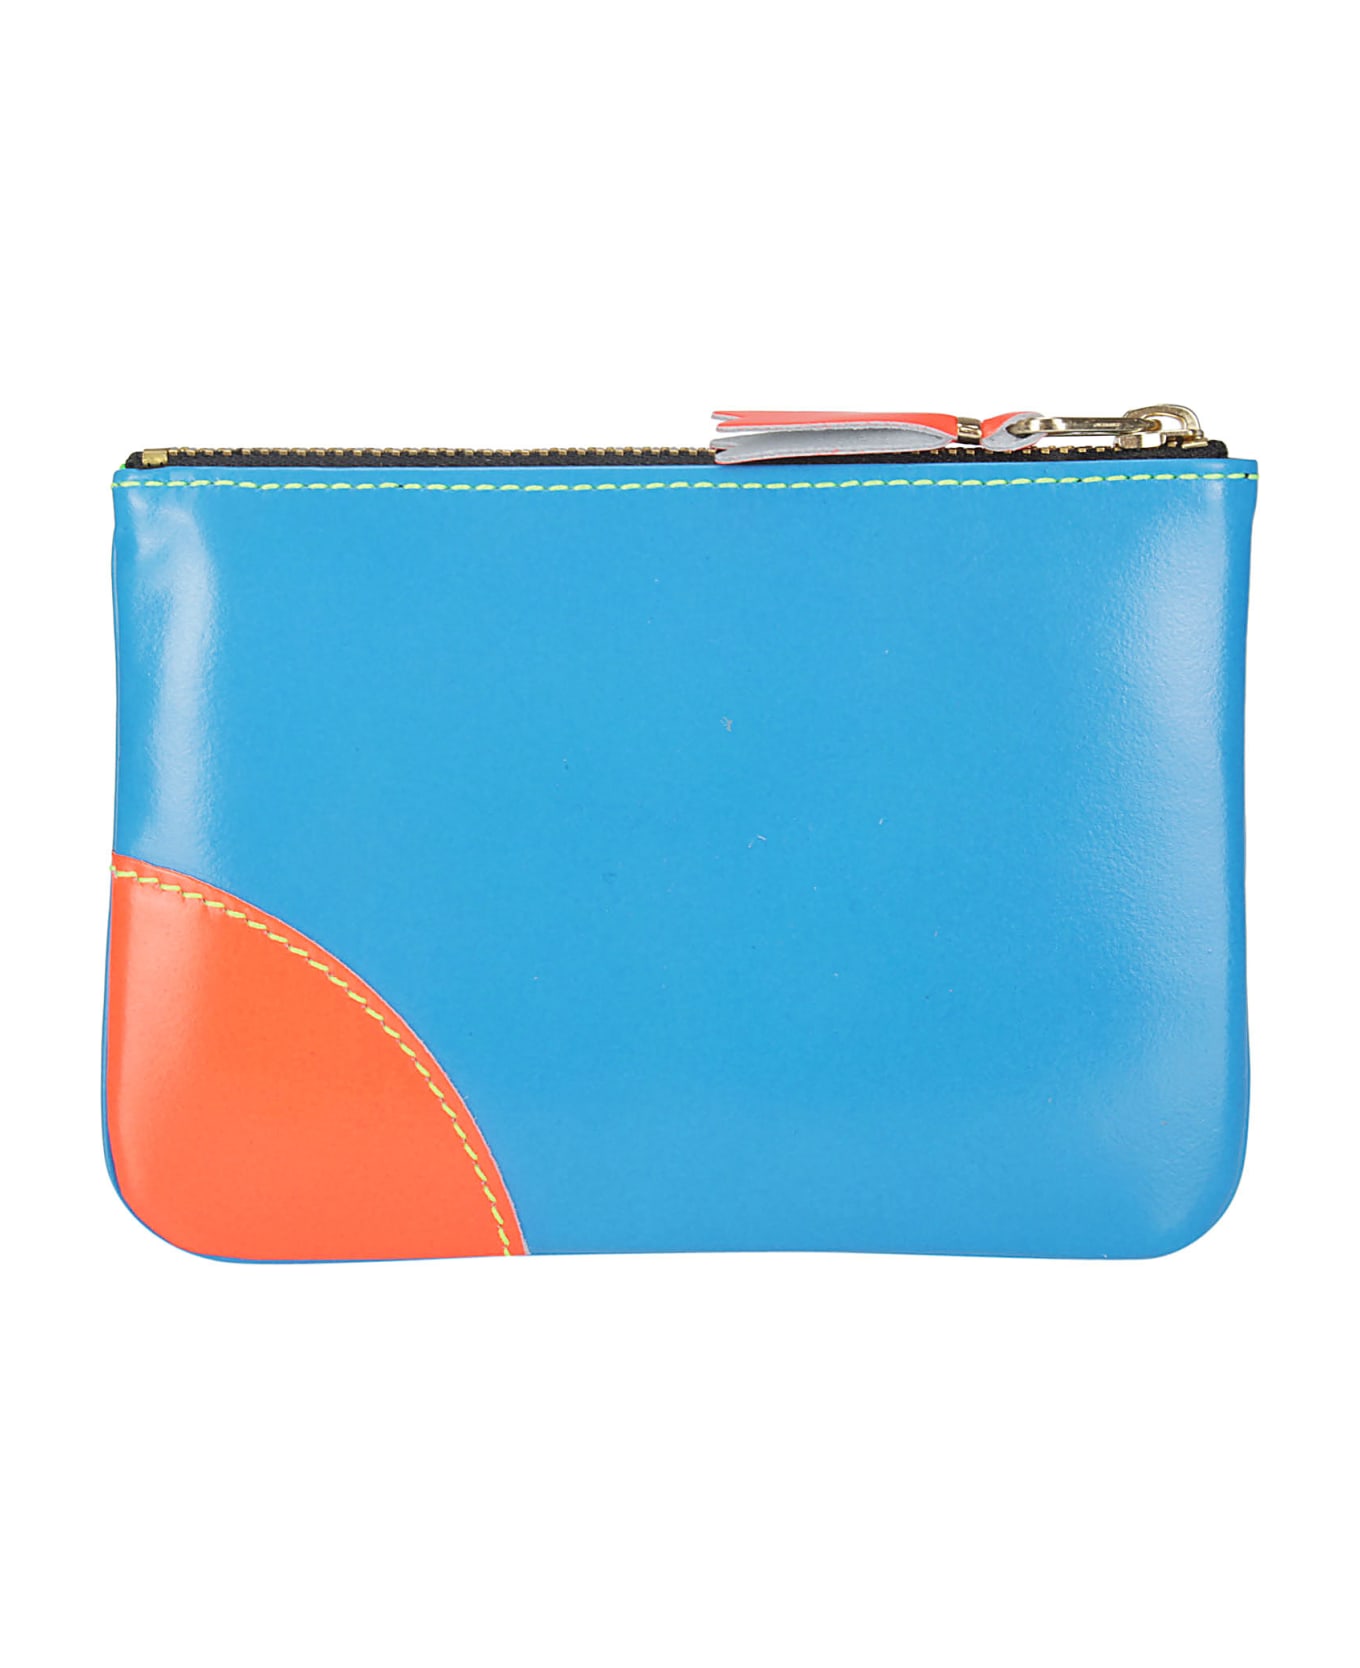 Comme des Garçons Wallet Super Fluo Leather Line - BLUE/GREEN 財布